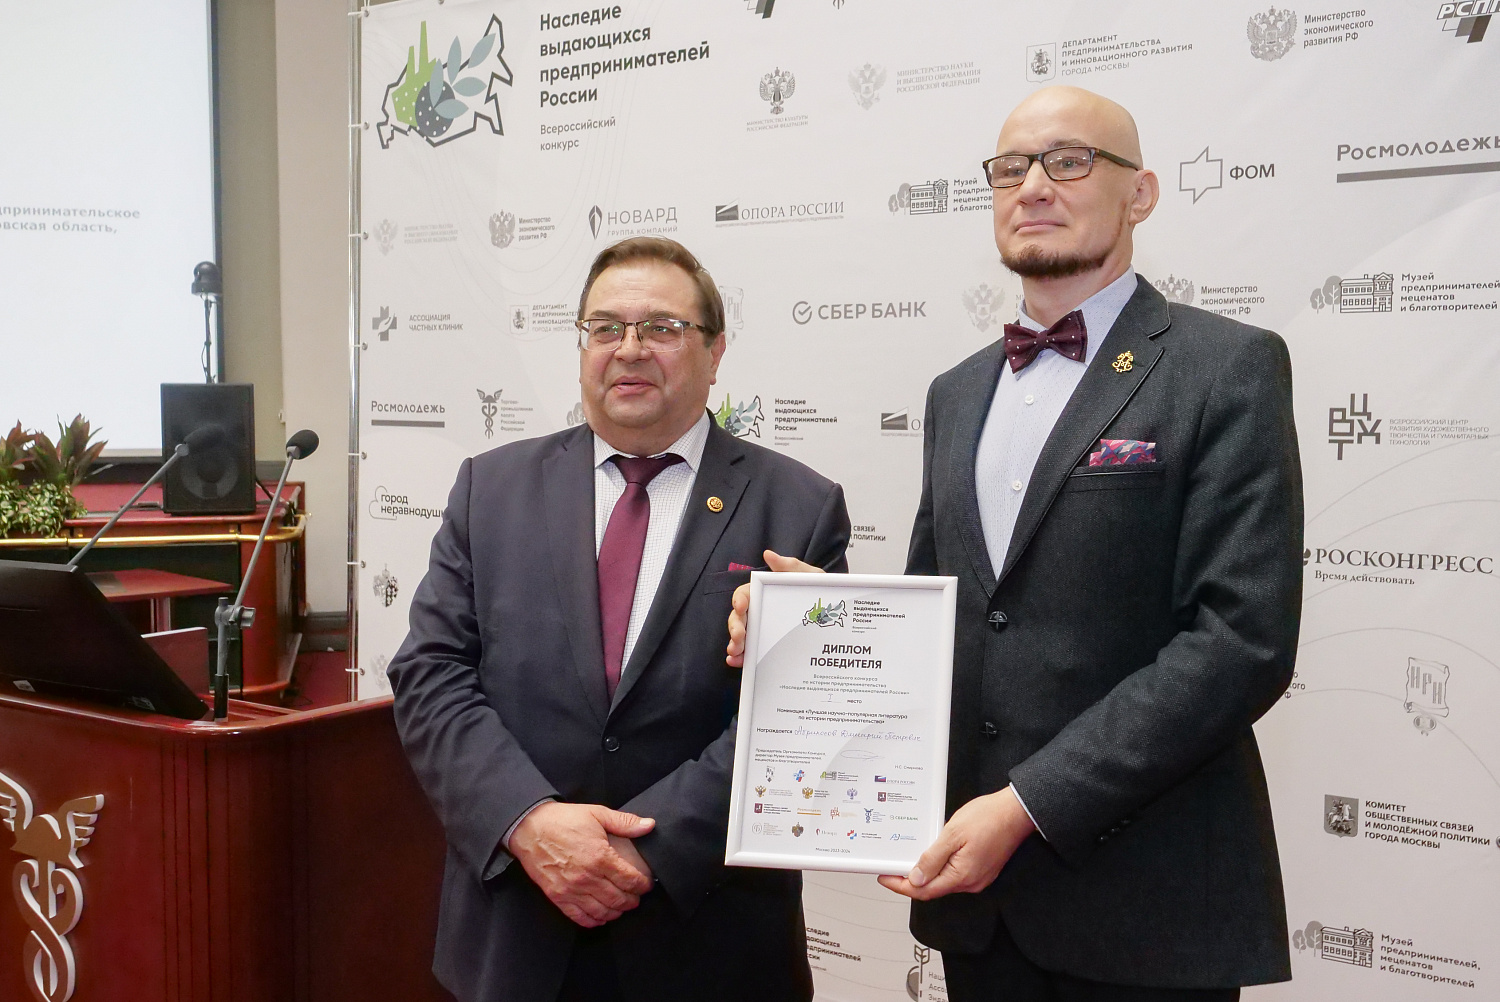 11 апреля в Конгресс-центре ТПП РФ состоялась торжественная церемония награждения победителей III Всероссийского конкурса по истории предпринимательства